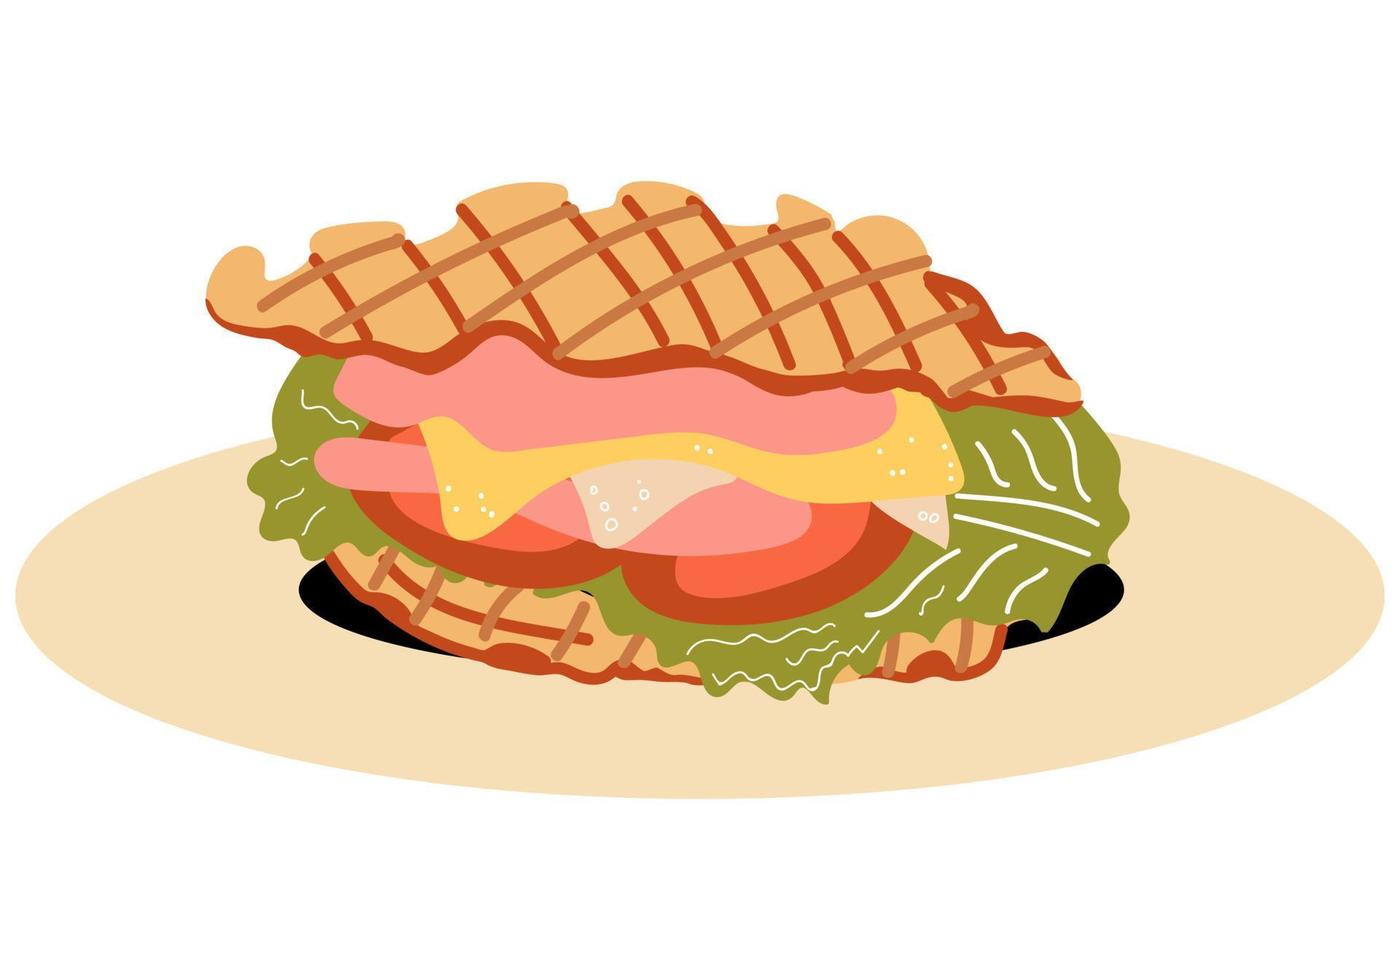 Croffle-Sandwich mit Schinken, Käse und Salatblättern, Tomate. Croissant-Waffeln, die in einem Waffeleisen zubereitet werden. koreanischer Nachtisch. Vektor-Essen. vektor